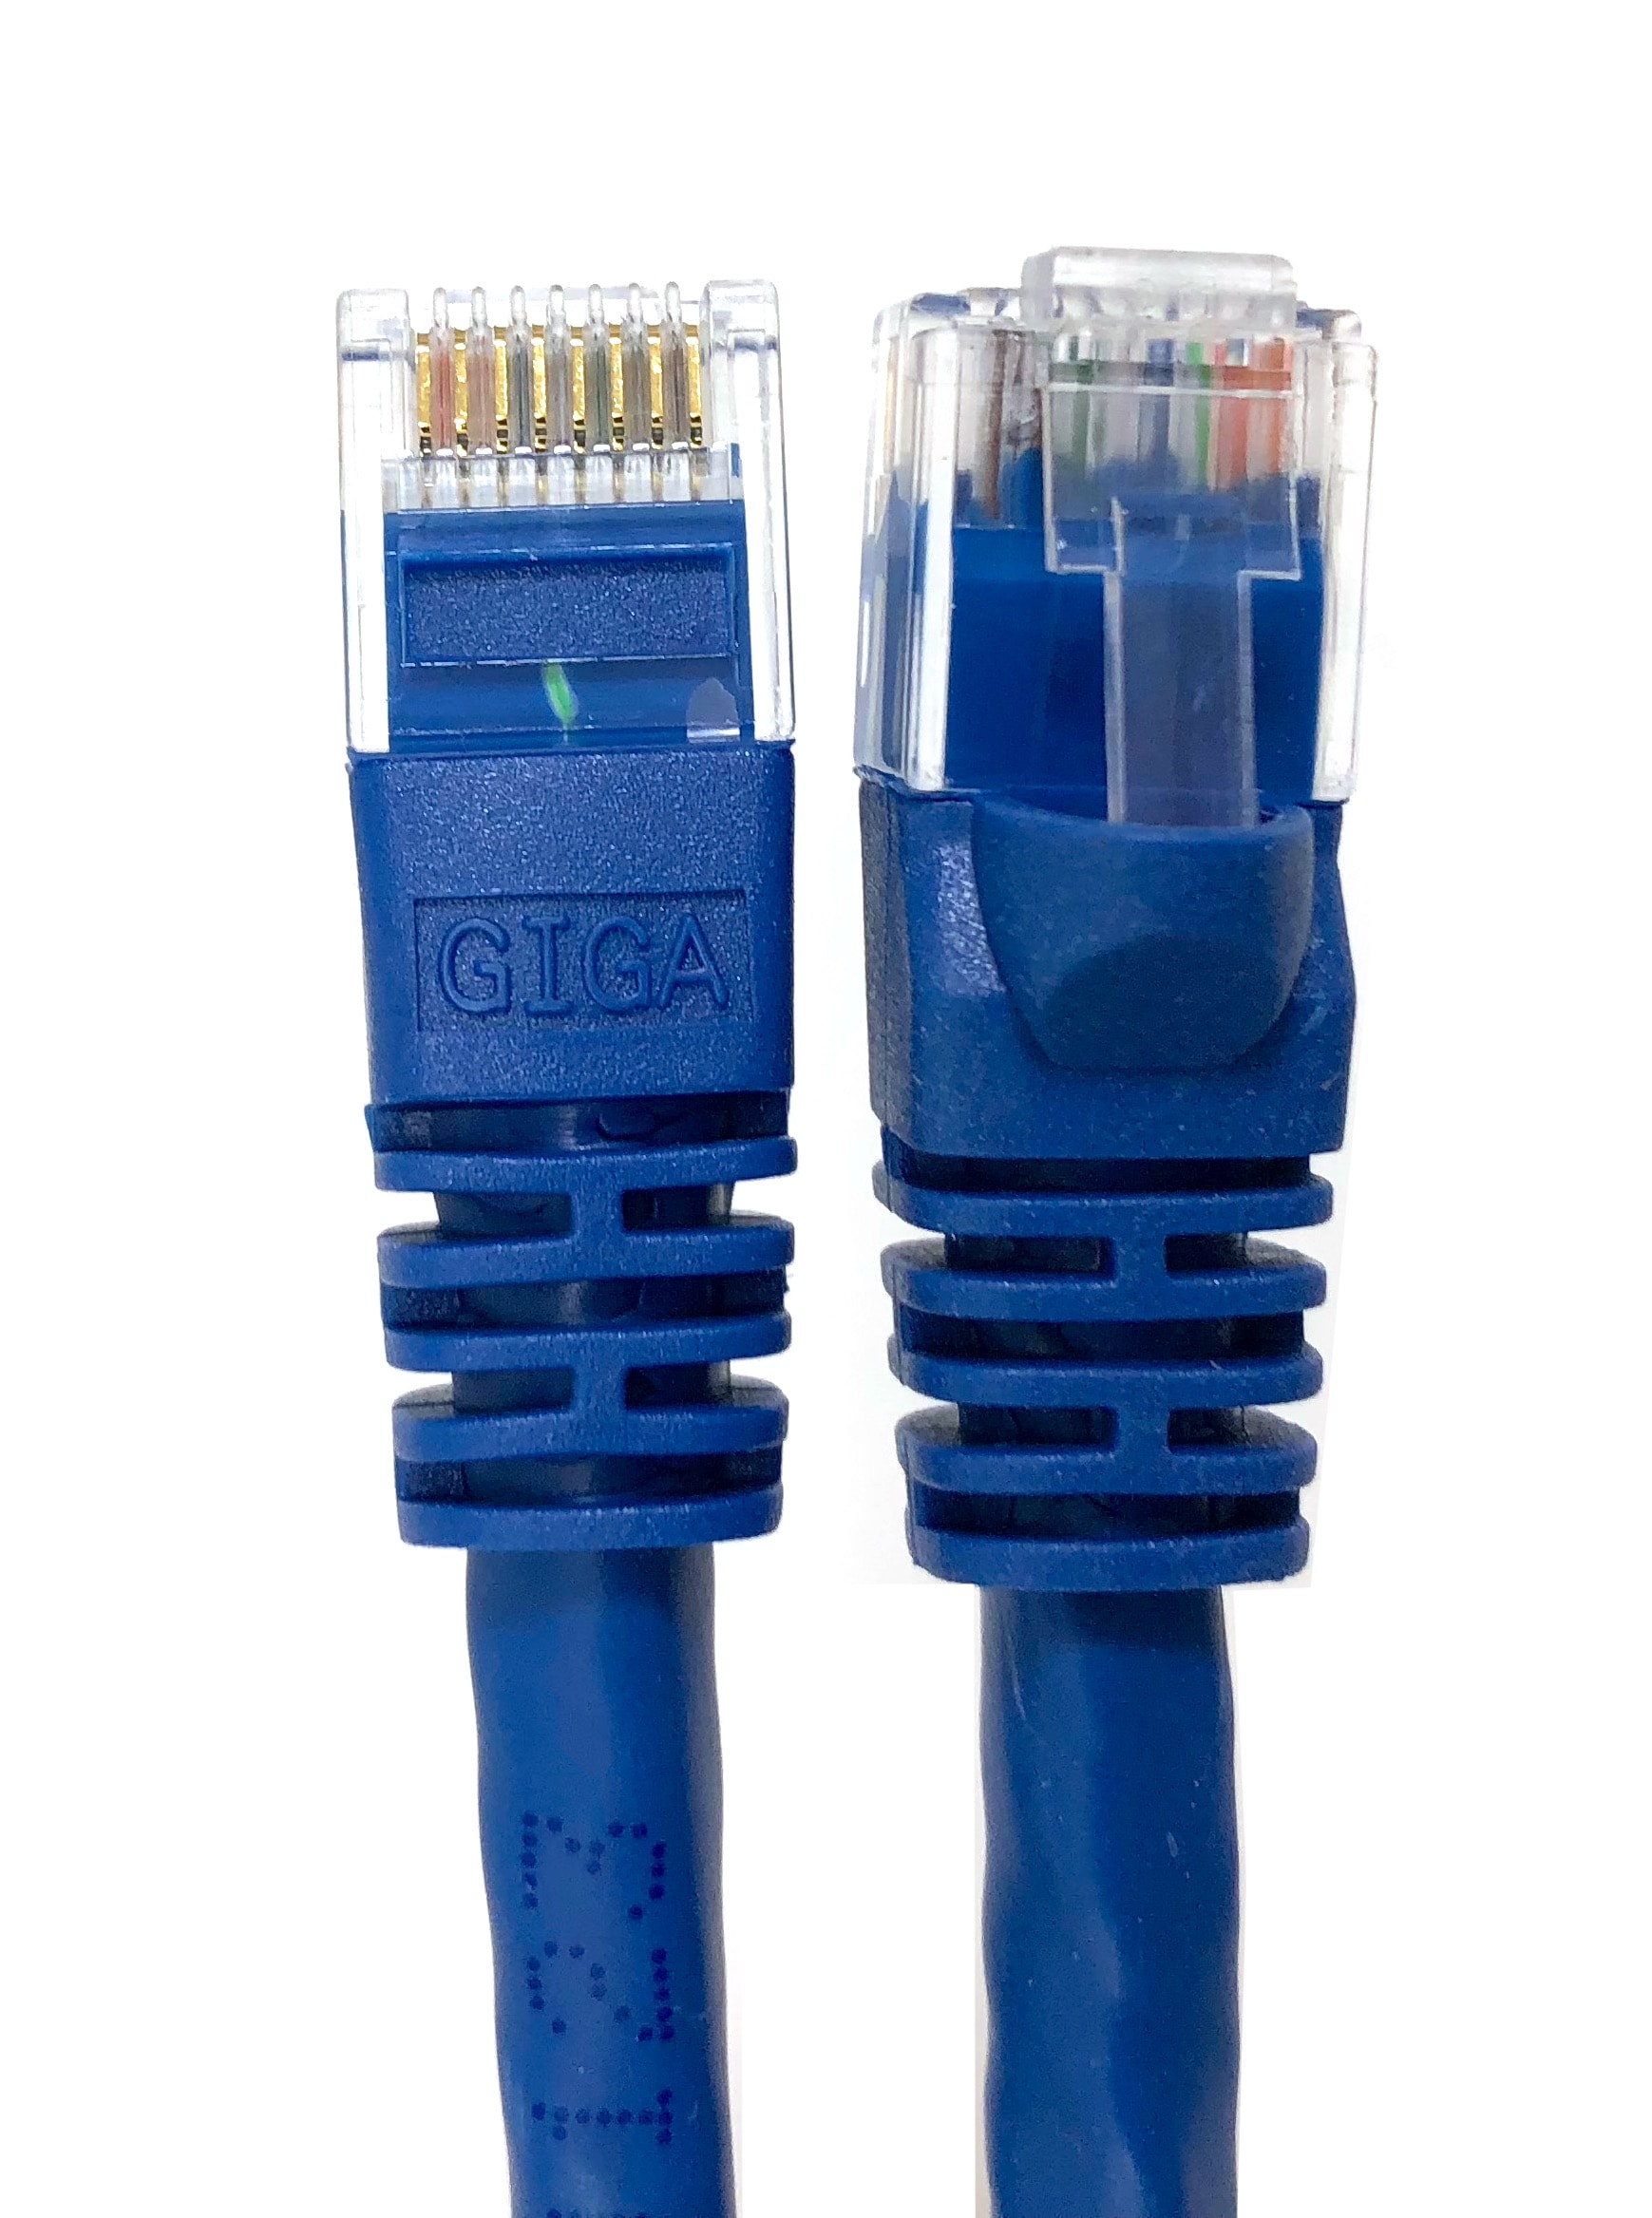 Cable Ethernet CAT 5e Spectra 4.26 metros Azul